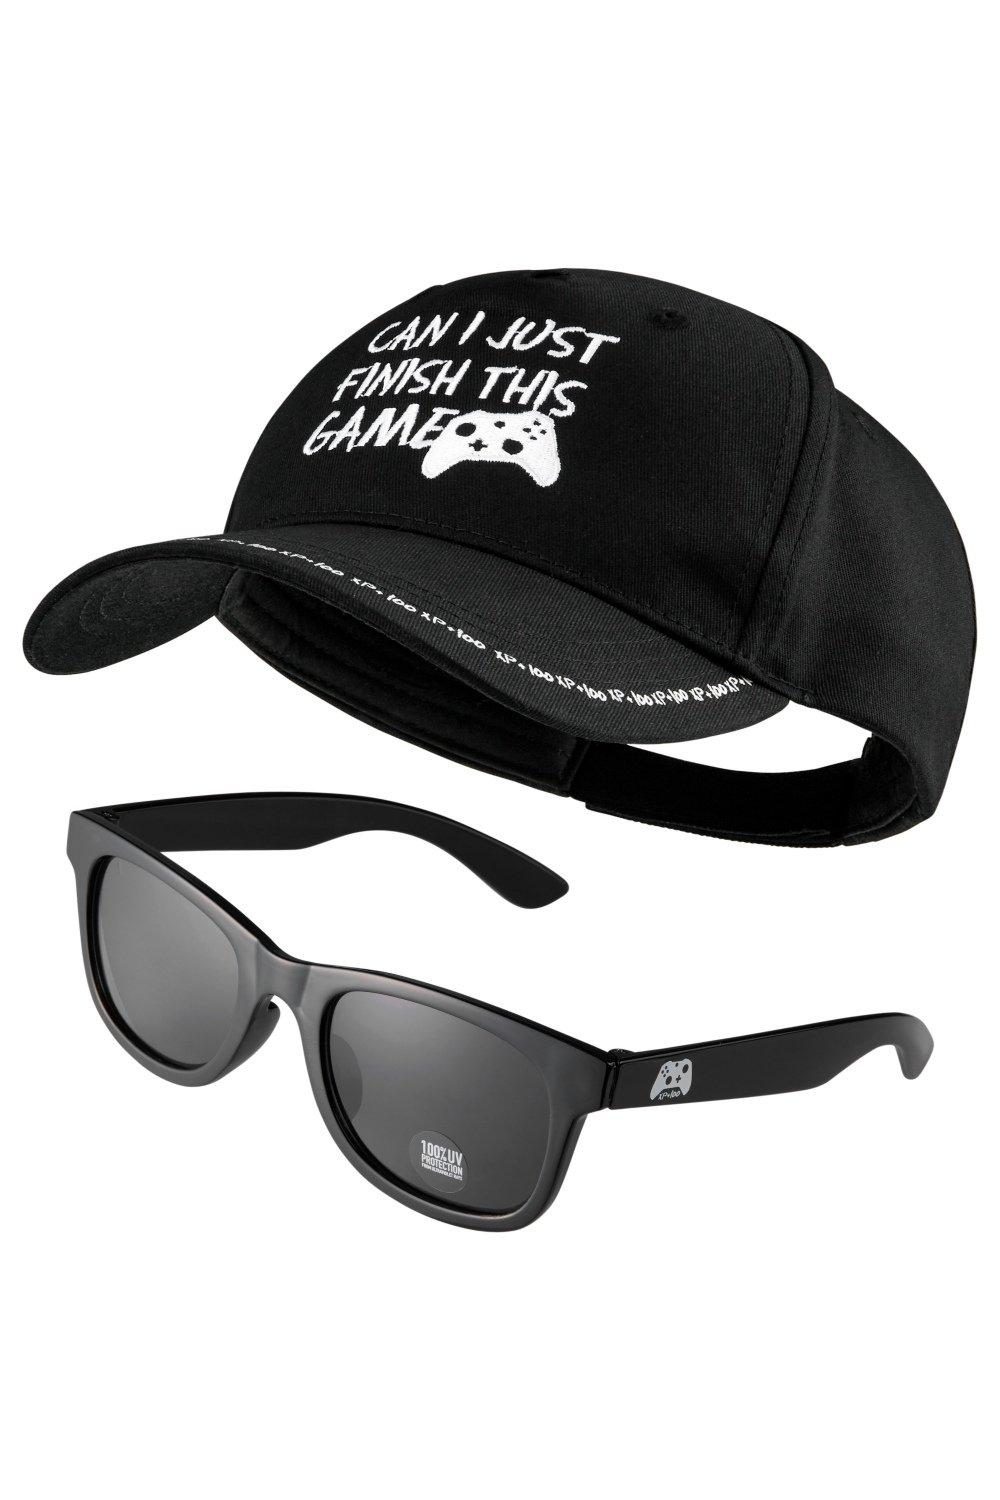 Набор бейсбольной кепки и солнцезащитных очков CityComfort, черный al кепка с защитой от солнца пустая спортивная кепка уличная солнцезащитная бейсбольная кепка для тренировок однотонная бейсбольная кепка